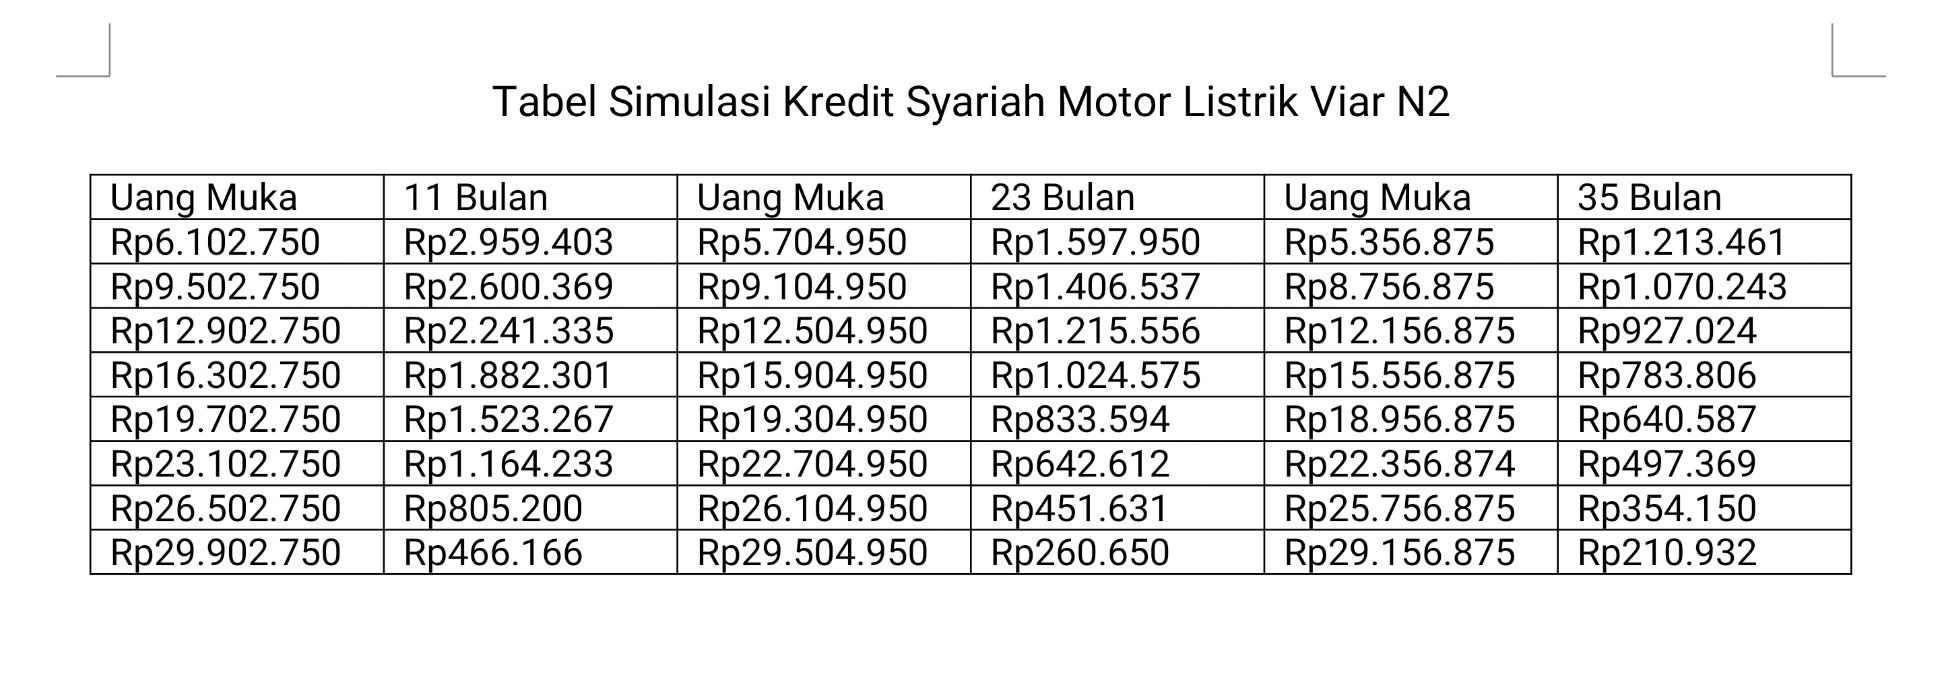 Tabel Simulasi Kredit Syariah Motor Listrik Viar N2.